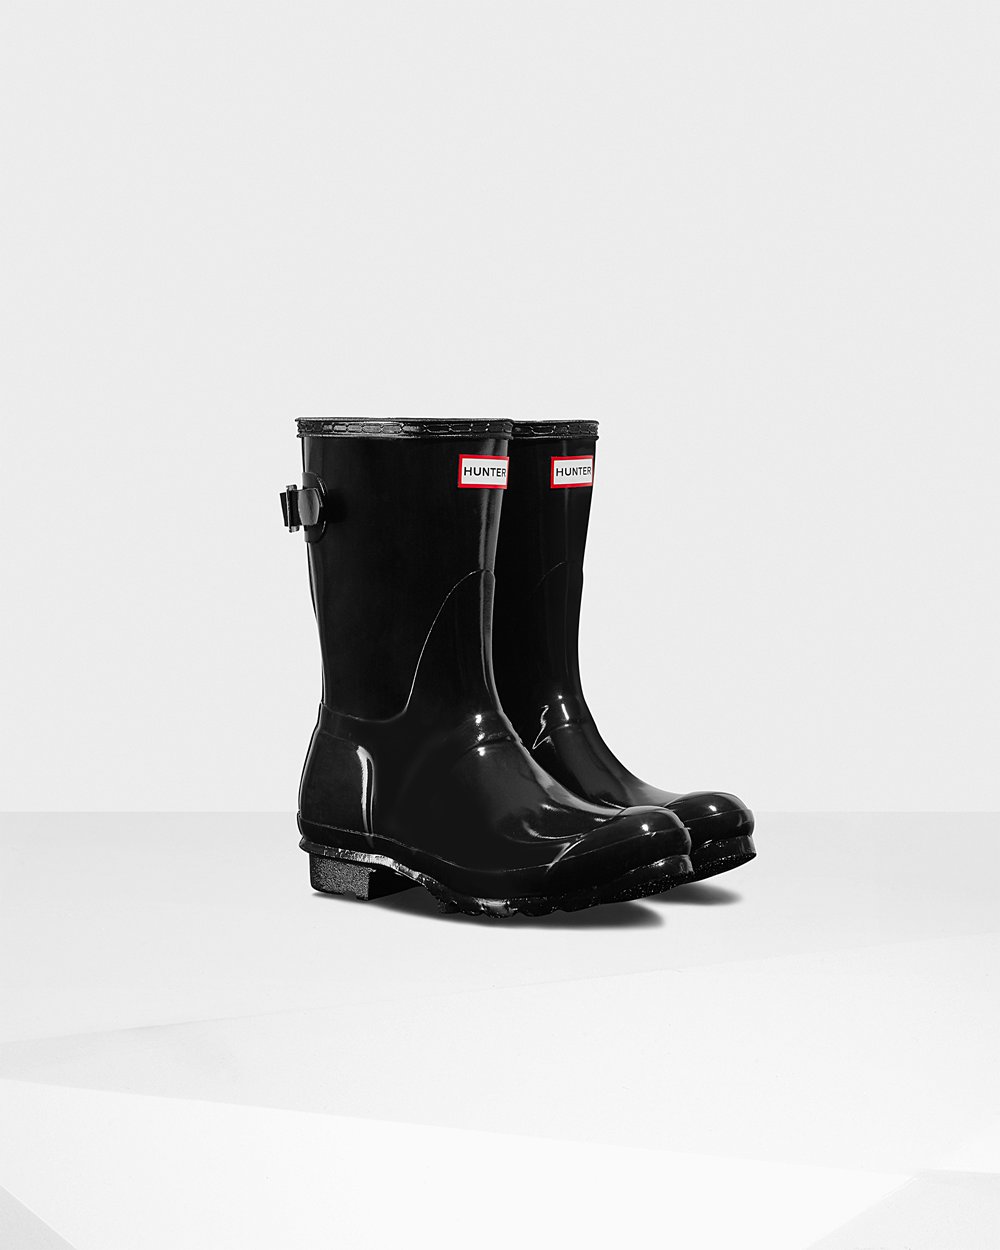 Womens Short Rain Boots - Hunter Original Back Adjustable Gloss (84HGKTBRS) - Black